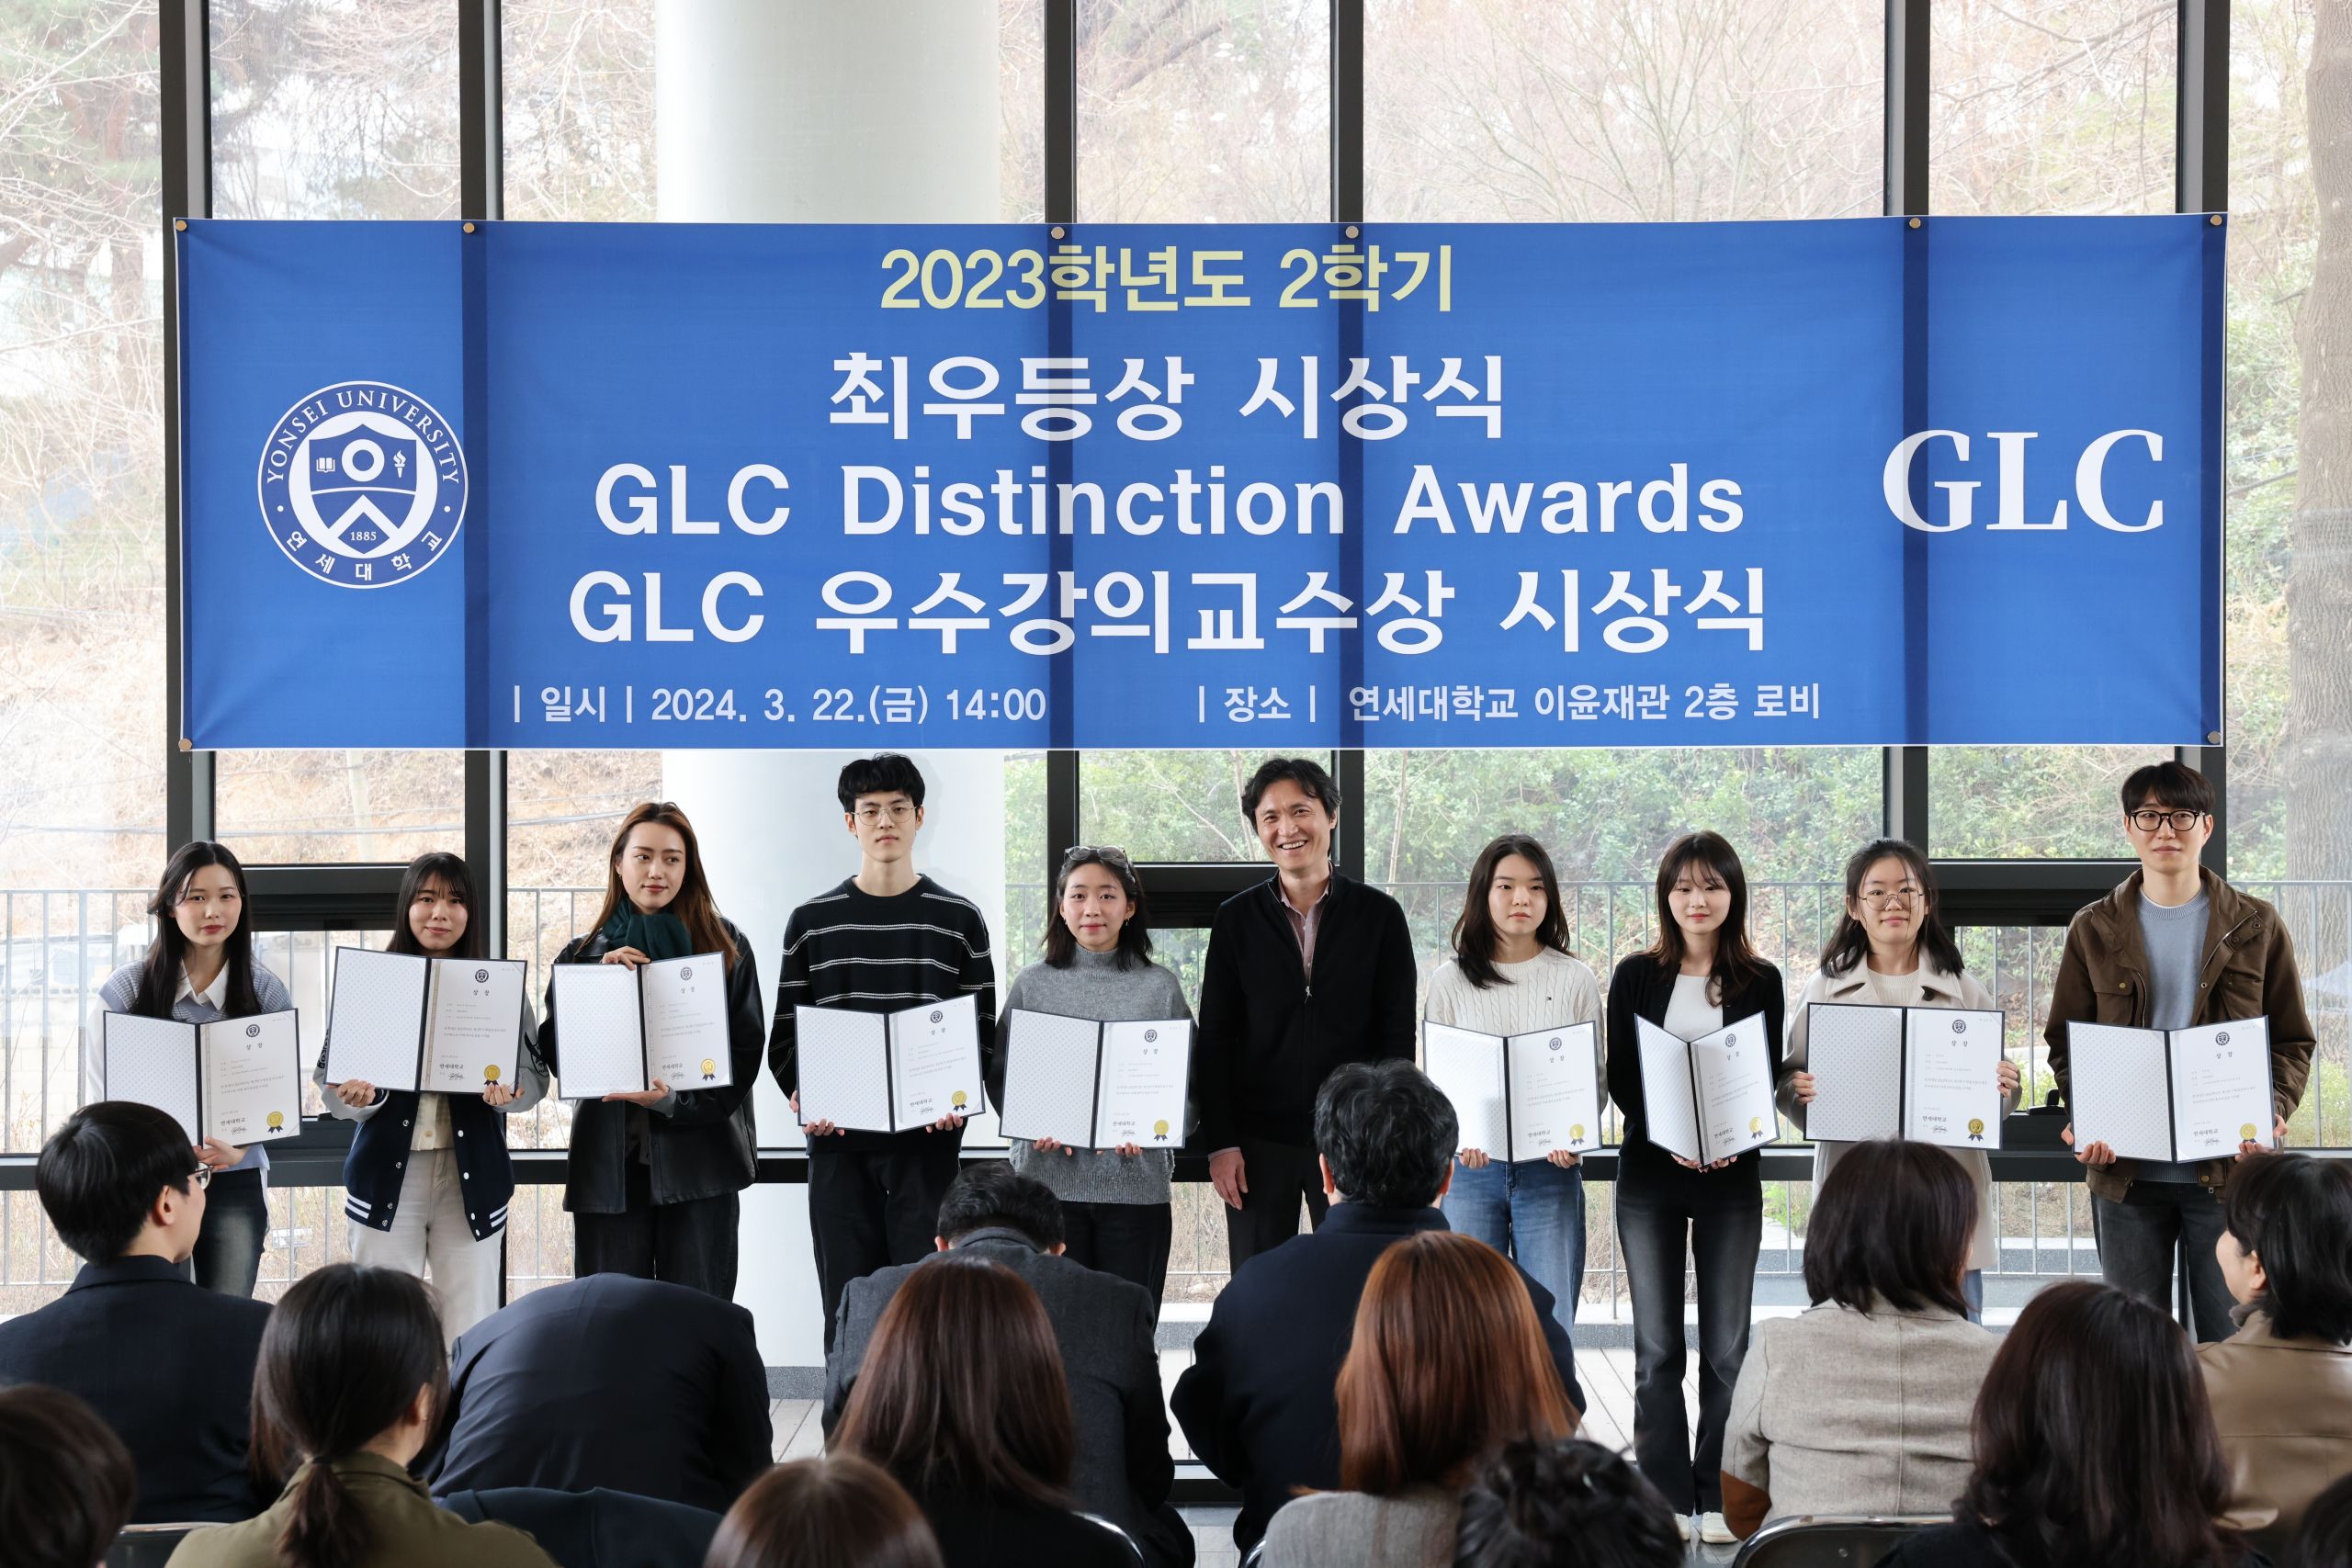 2023학년도 2학기 GLC Distinction Awards 수상자 인터뷰